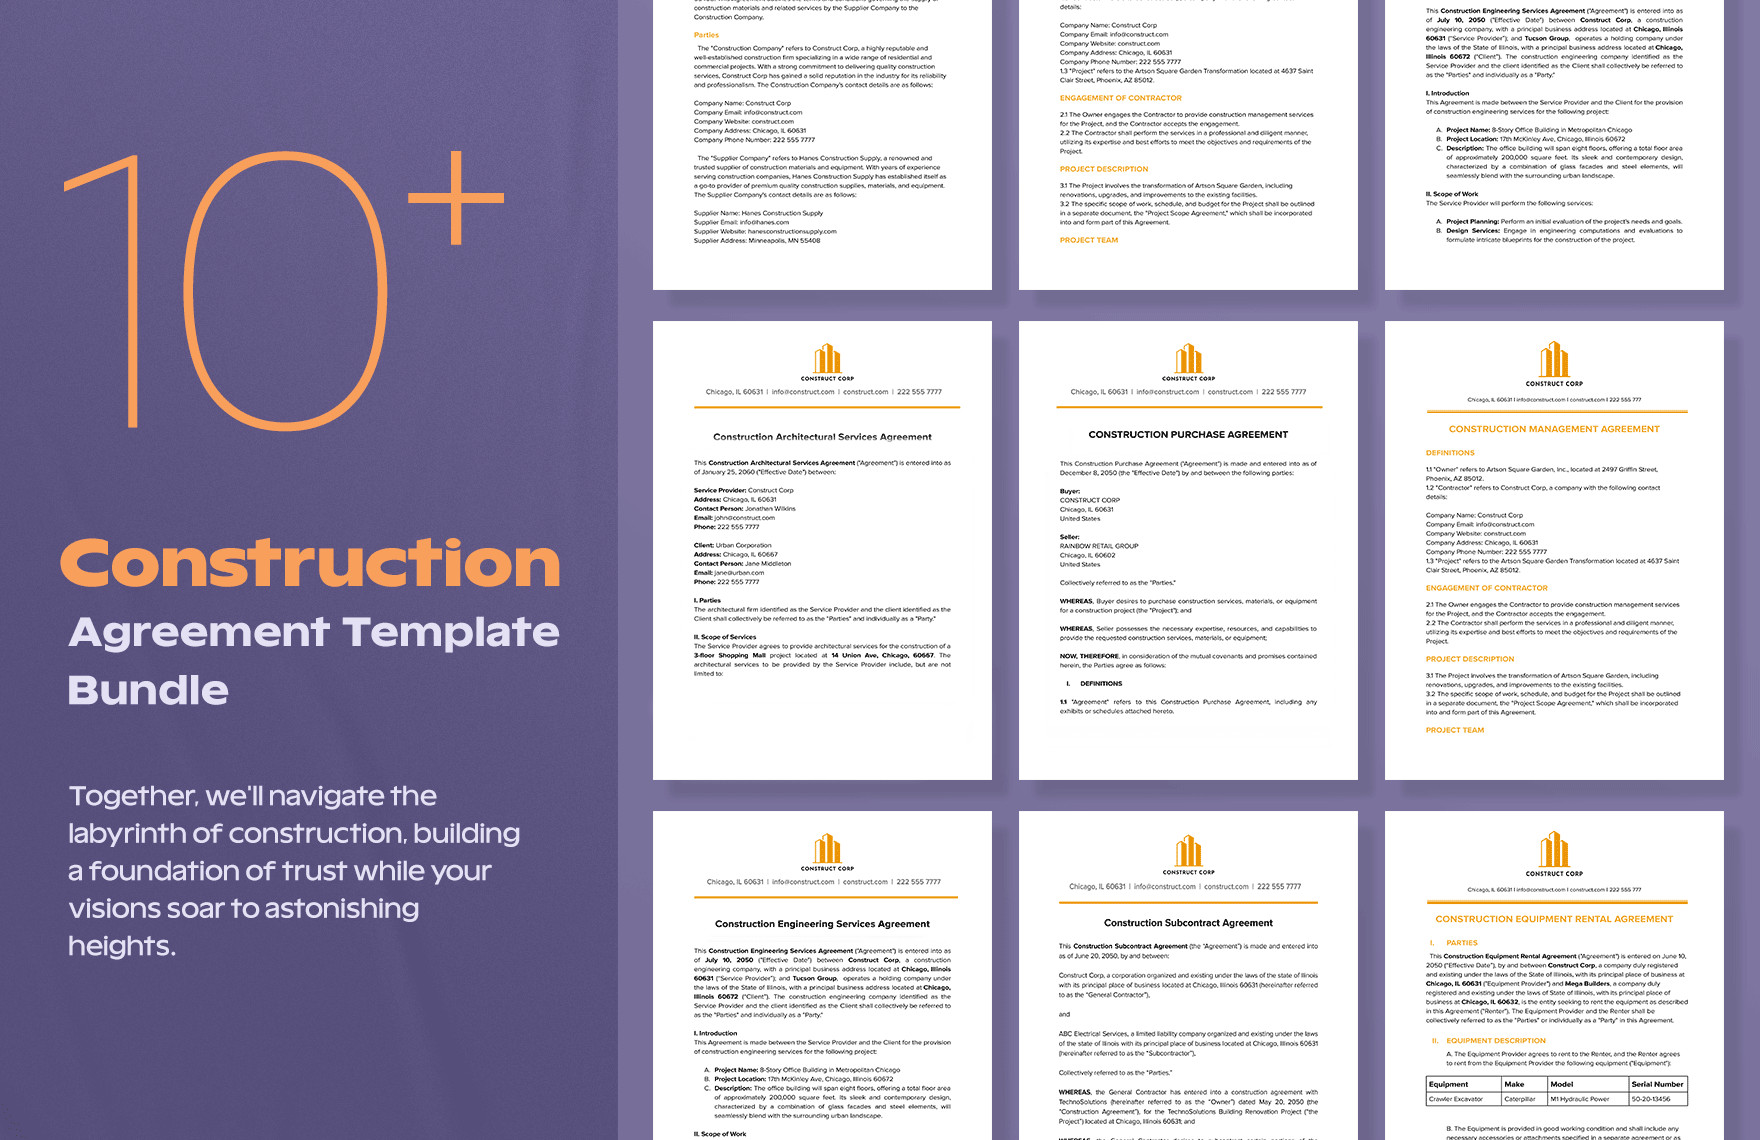 10 construction agreement template bundle